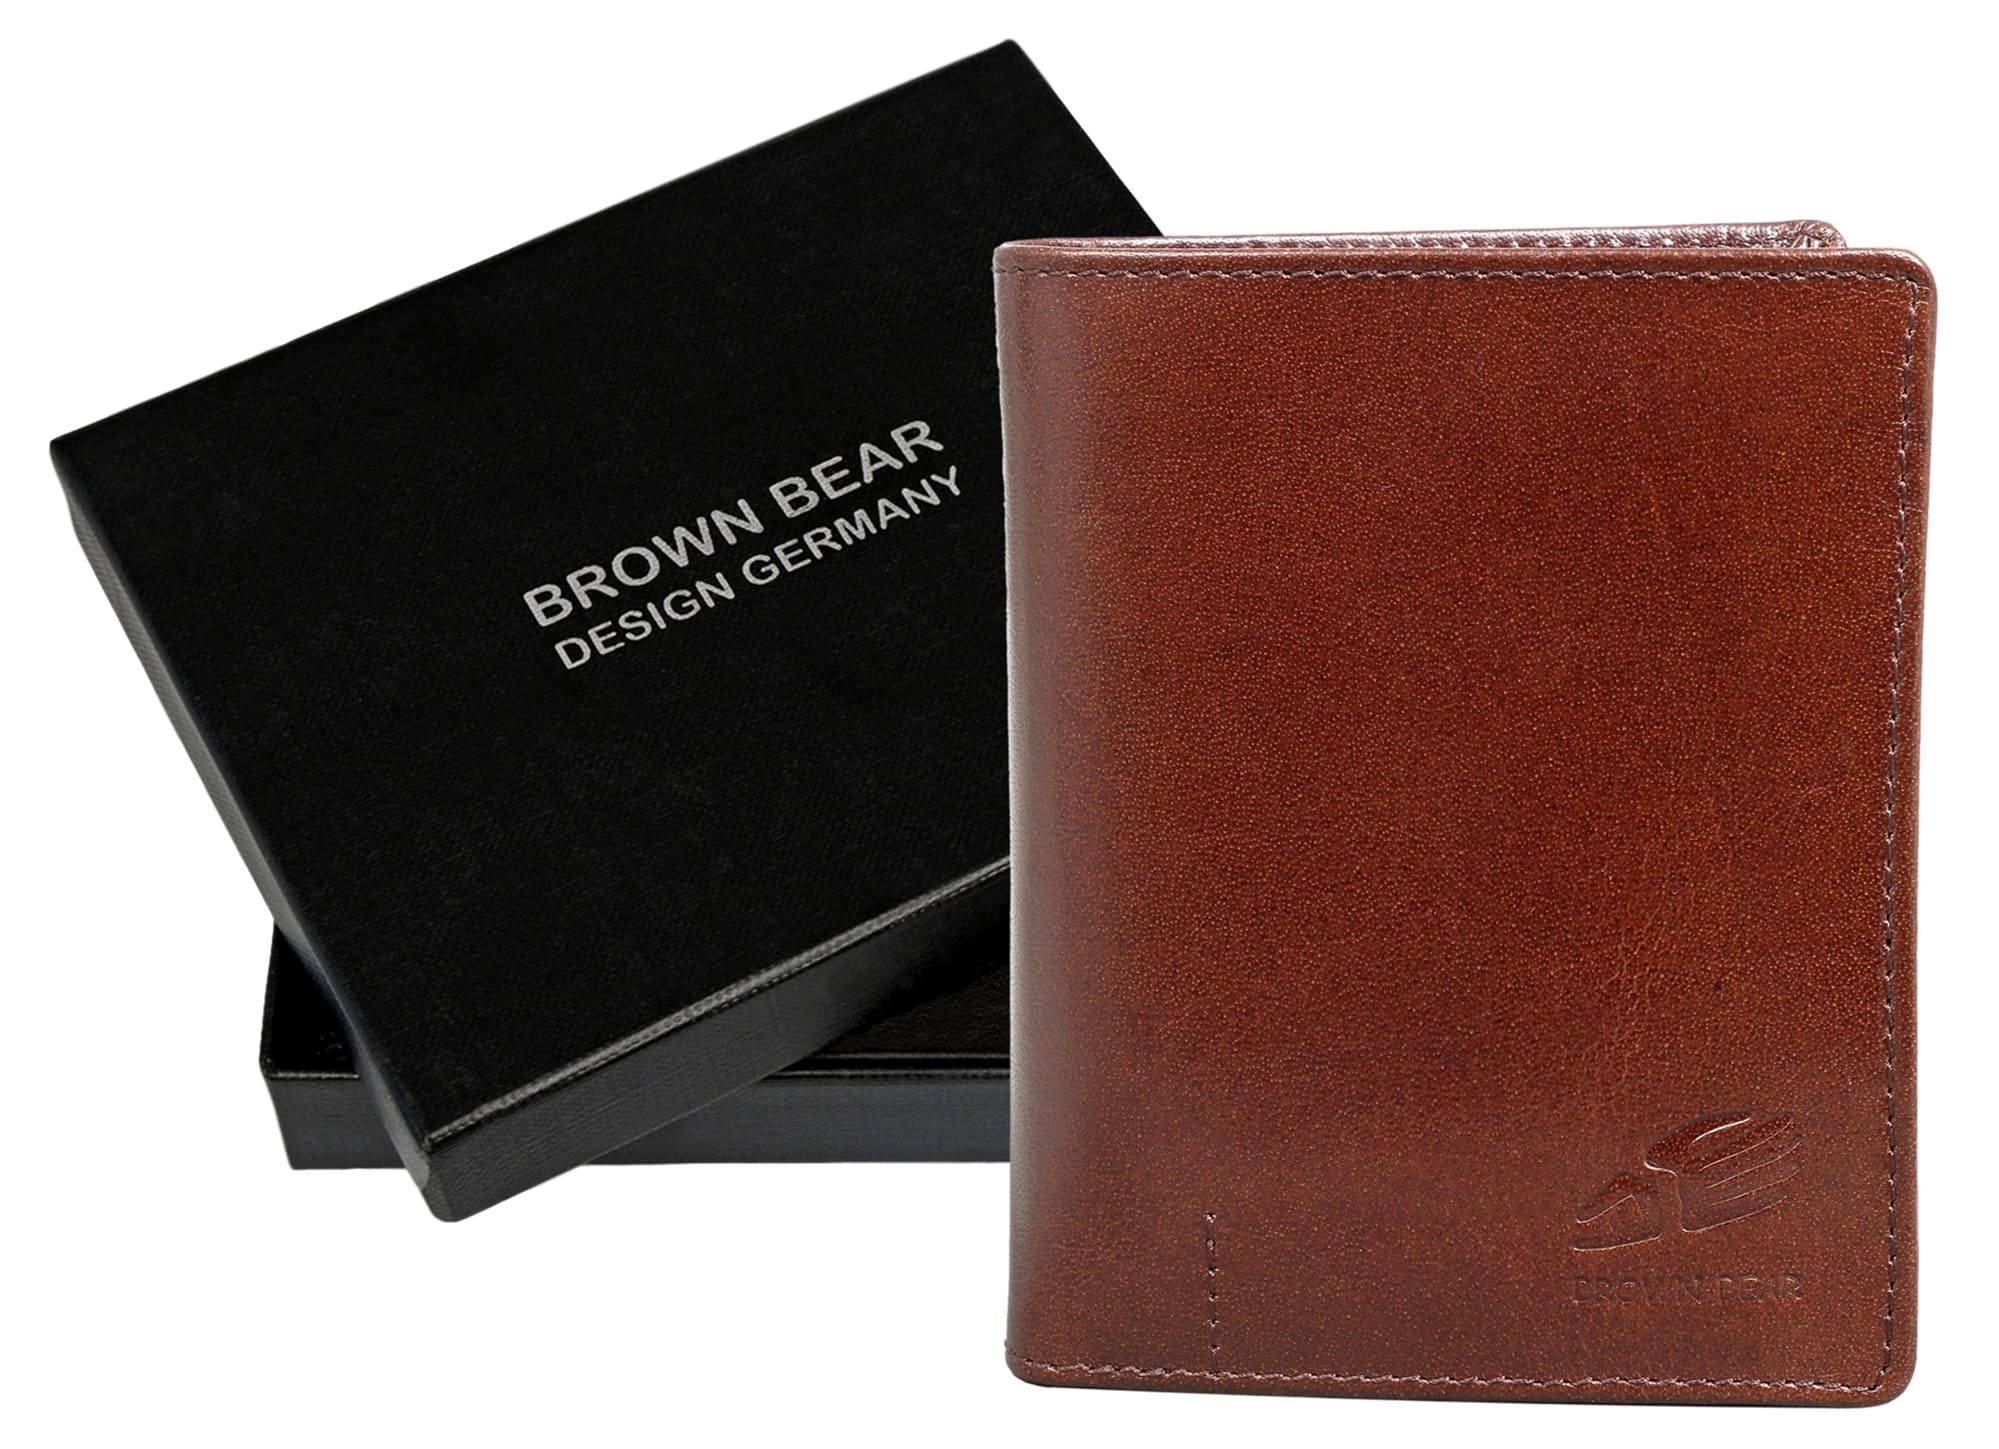 Brown Bear Geldbörse IBP Kartenfächer Echtleder, Reißverschlussinnenfach Schutz Toscana Braun 11 2051 Braun RFID Unisex Sichtfach